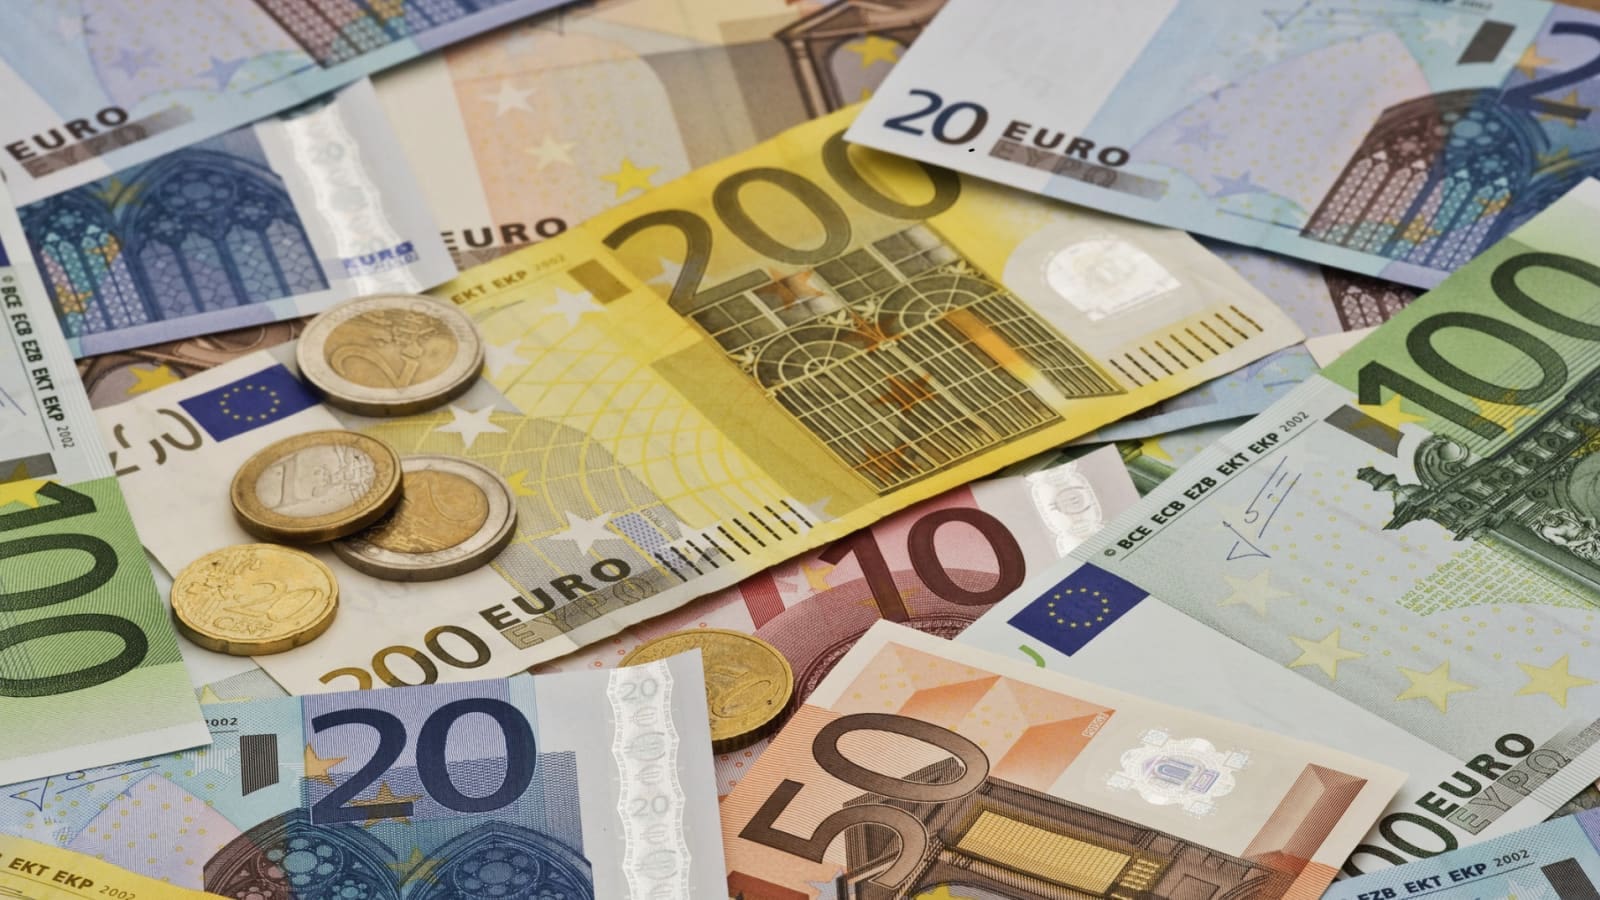 Euro mírně posiluje po zprávě, že ECB bude postupně omezovat nákupy dluhopisů - Burzovnisvet.cz - Akcie, kurzy, burza, forex, komodity, IPO, dluhopisy - zpravodajství